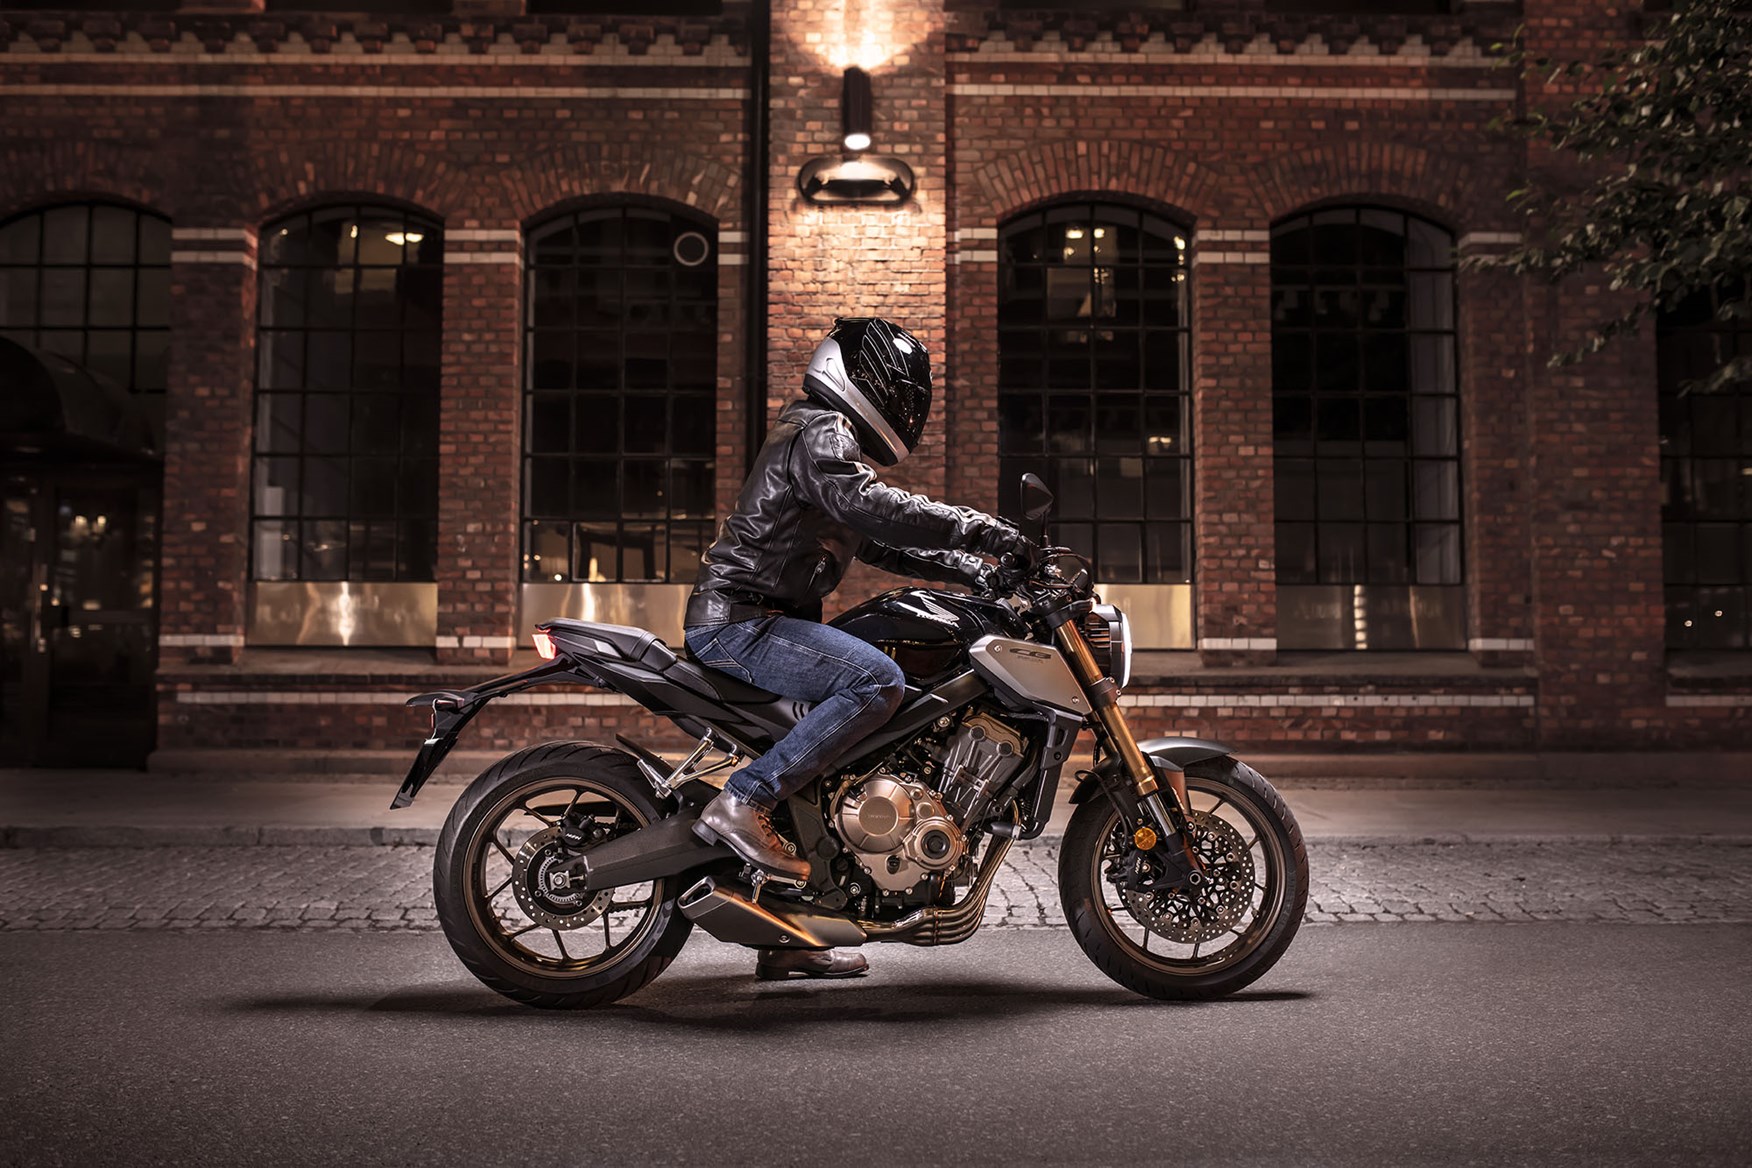 2019 Honda CB650R Price Released in UK - Motorcycle news, Motorcycle ...